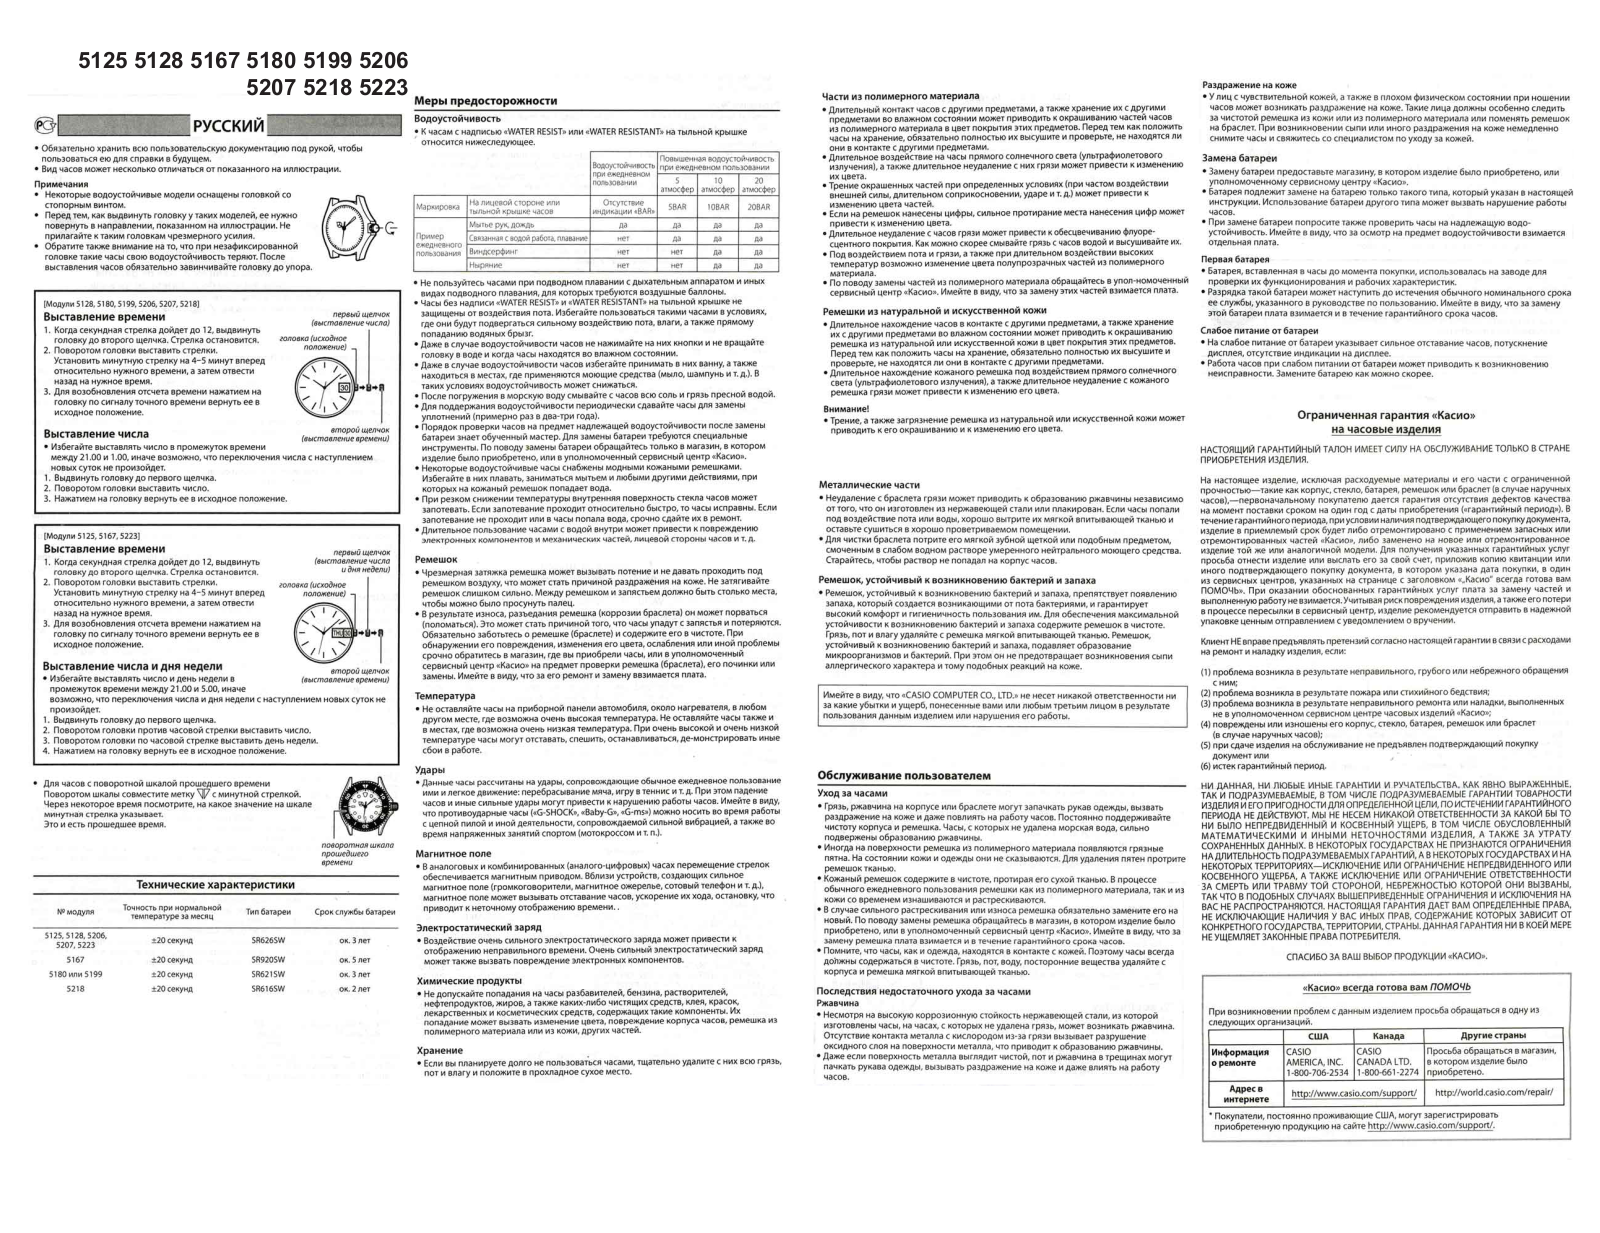 Casio EF-129D-7A User Manual